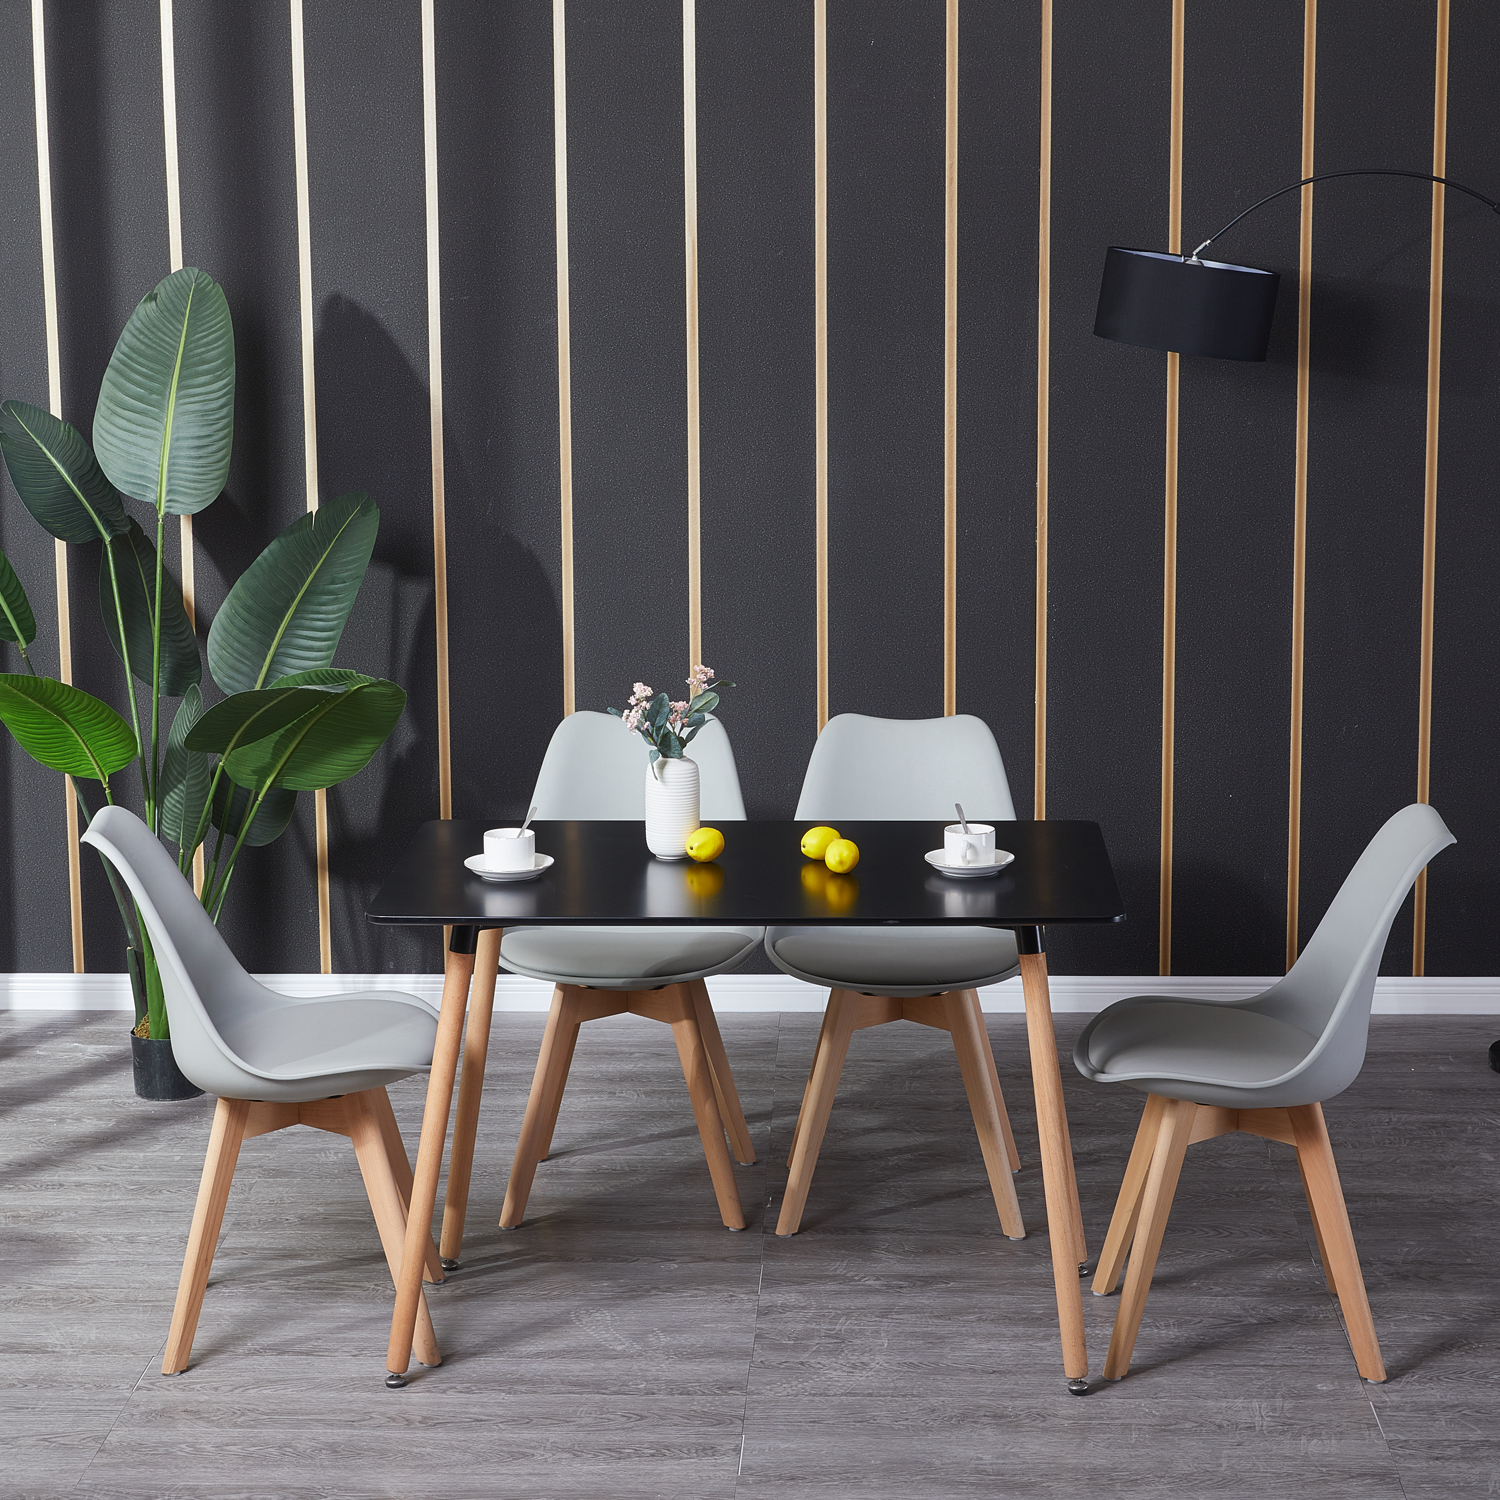 Dora Household Table à Manger Rectangulaire en Bois Salle à Manger Scandinave Simple Table en bois à quatre pieds 110*70*73cm -Noir